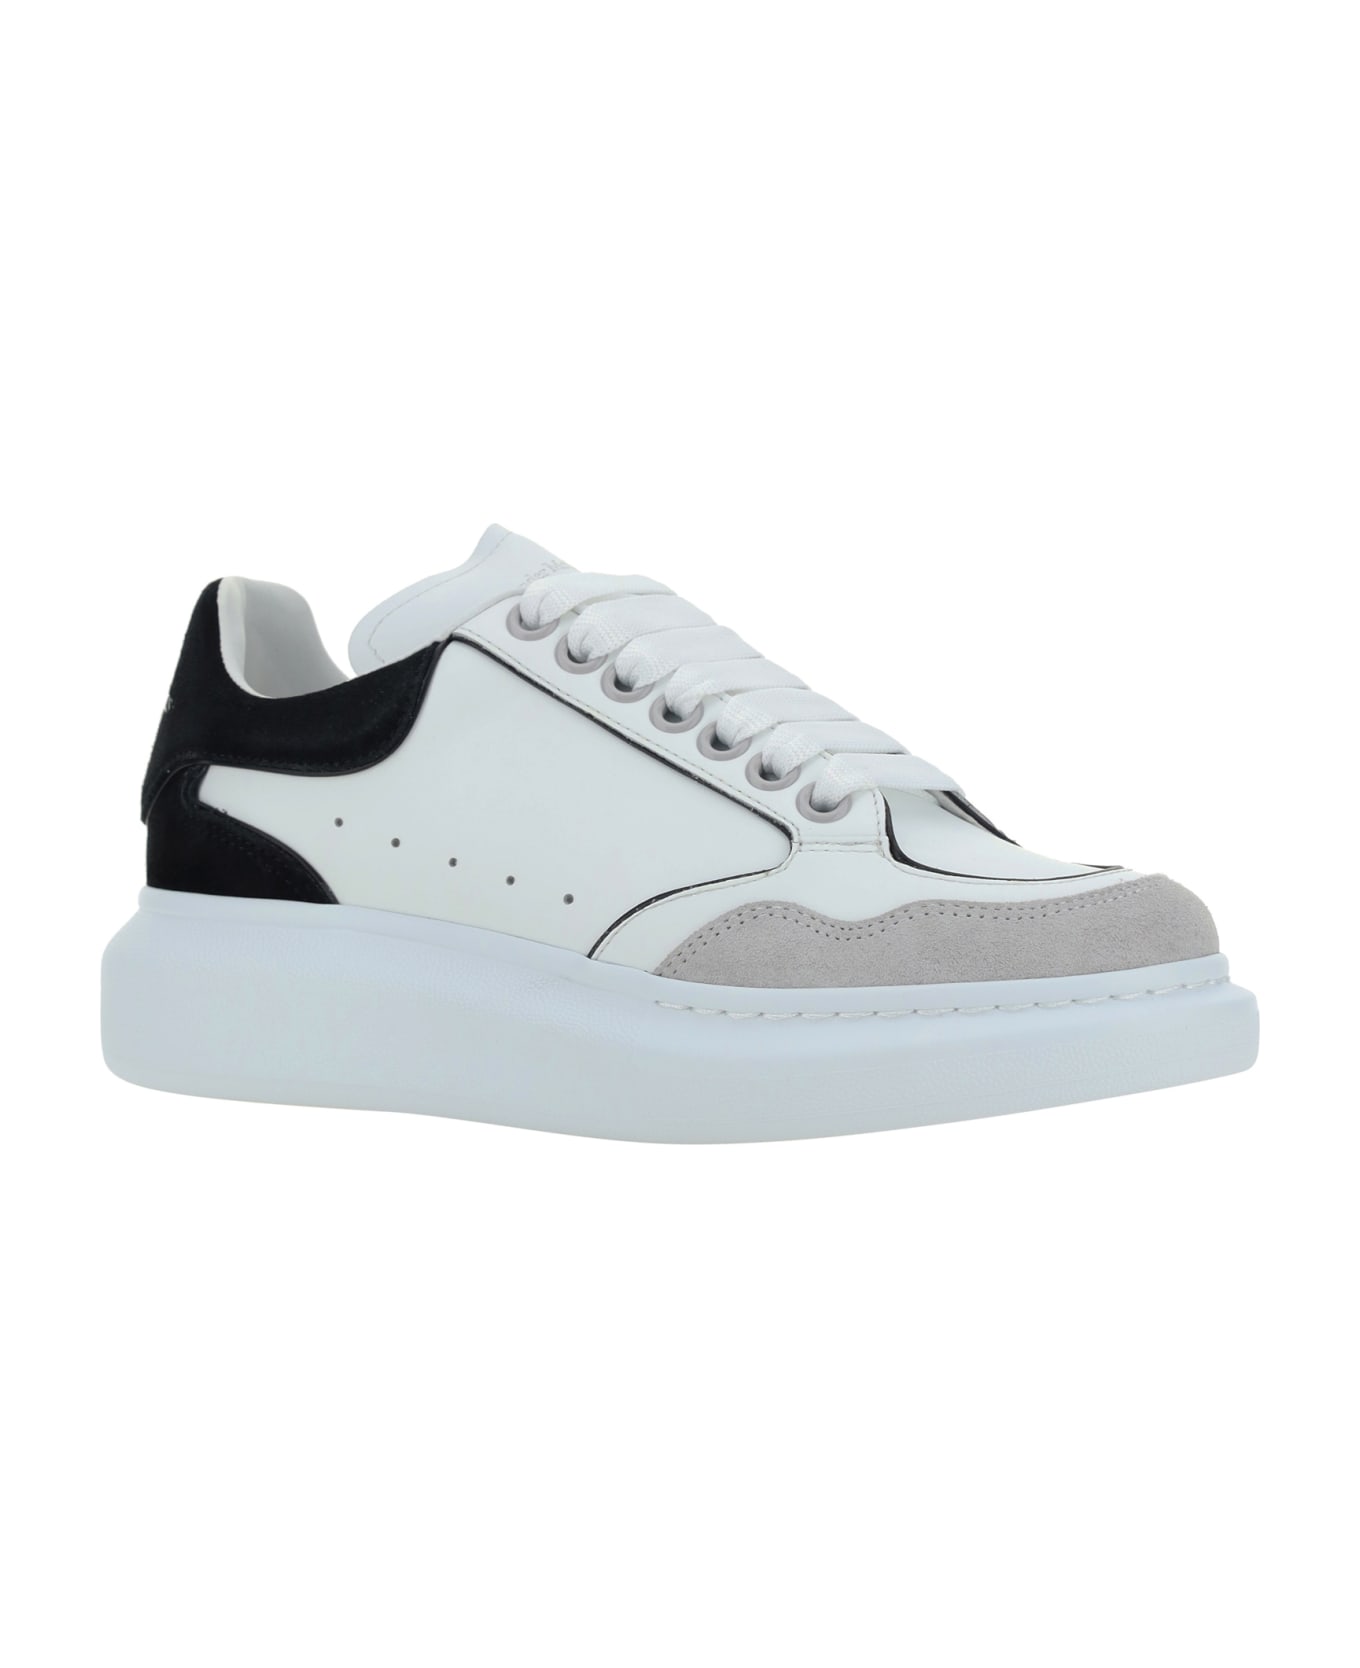 Alexander McQueen Sneakers - White/luna/black